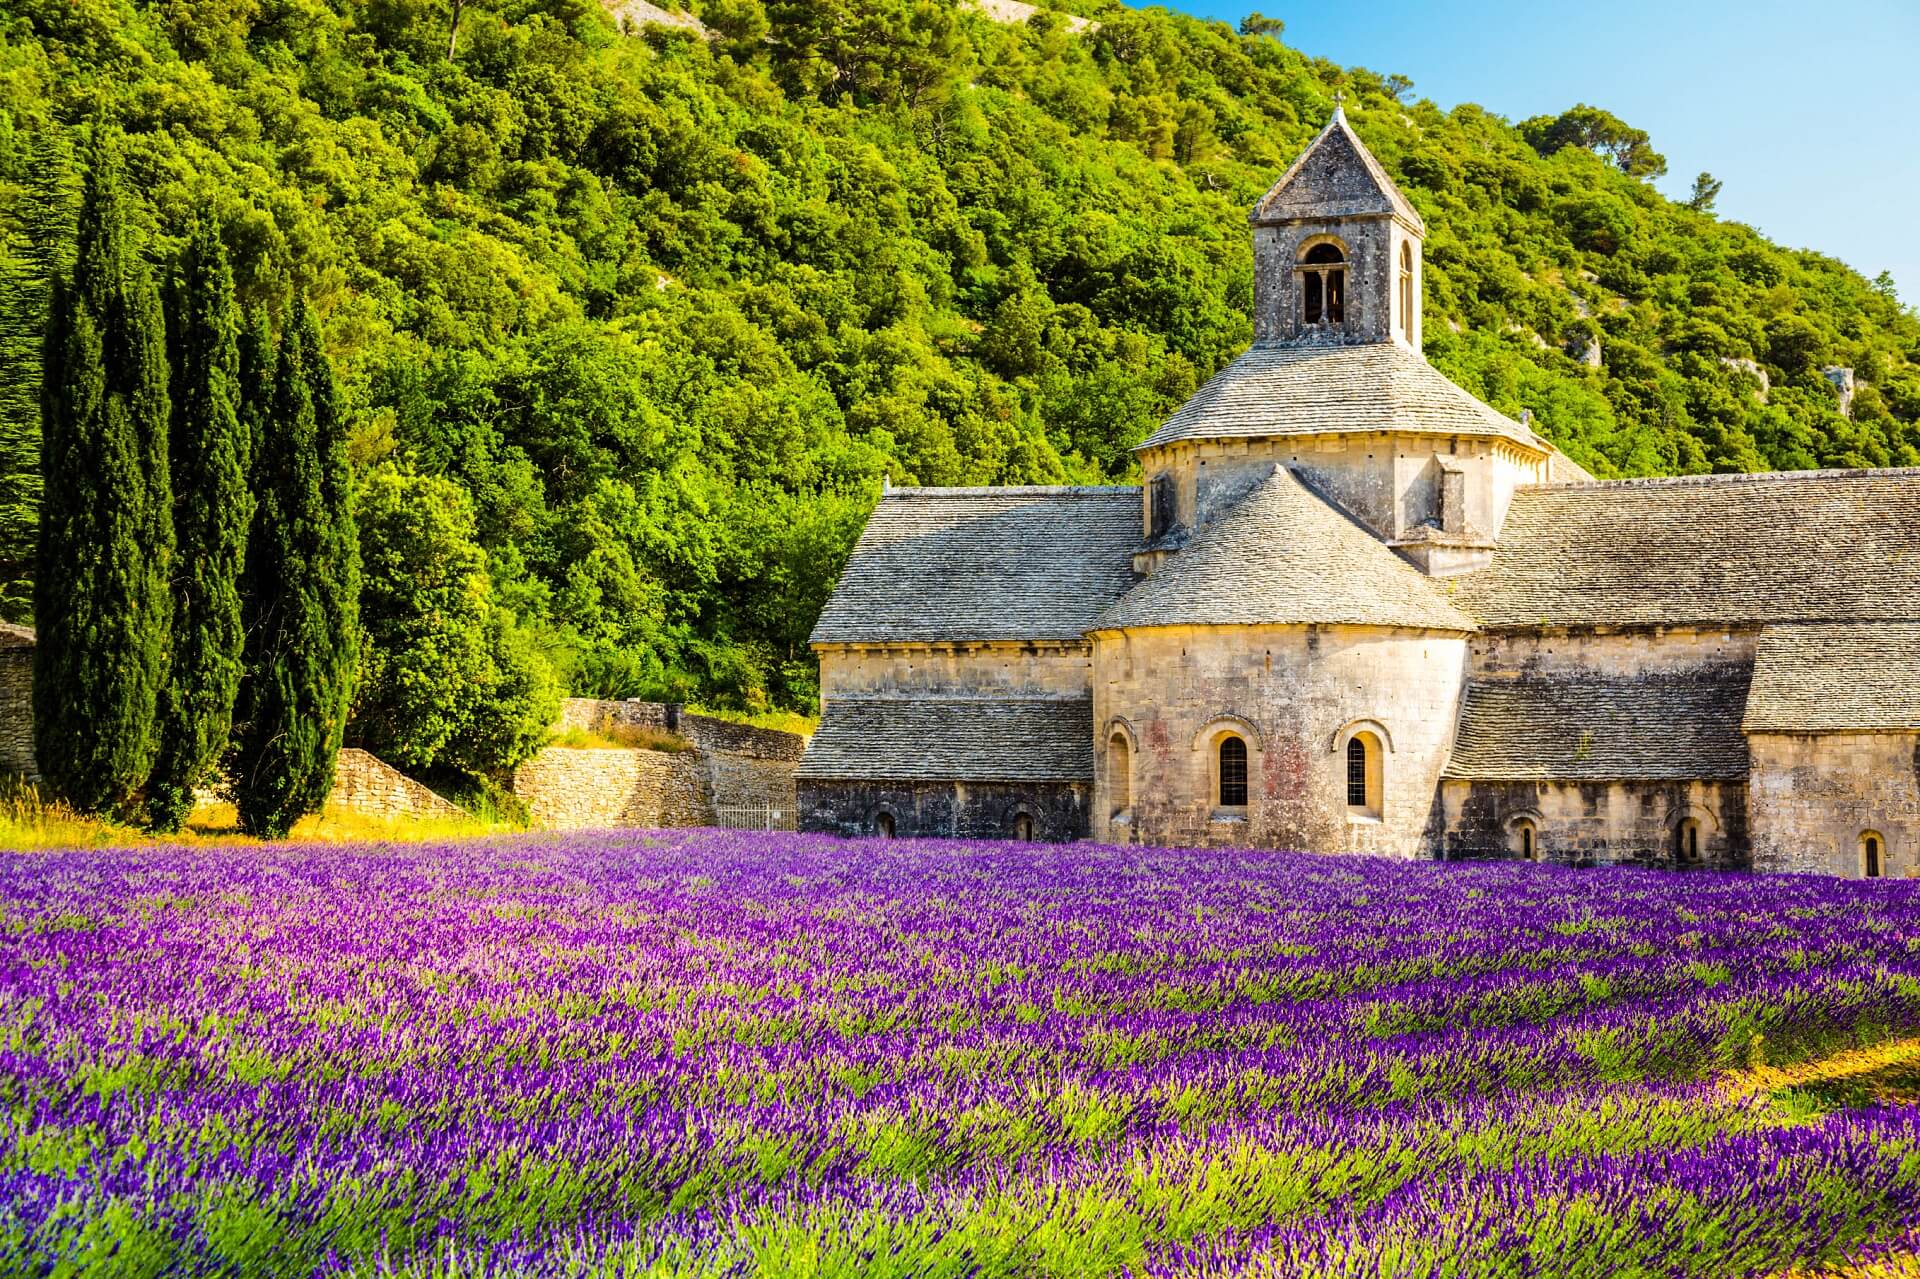 Lavendelfelder in der Provence: Kloster von Sénanque